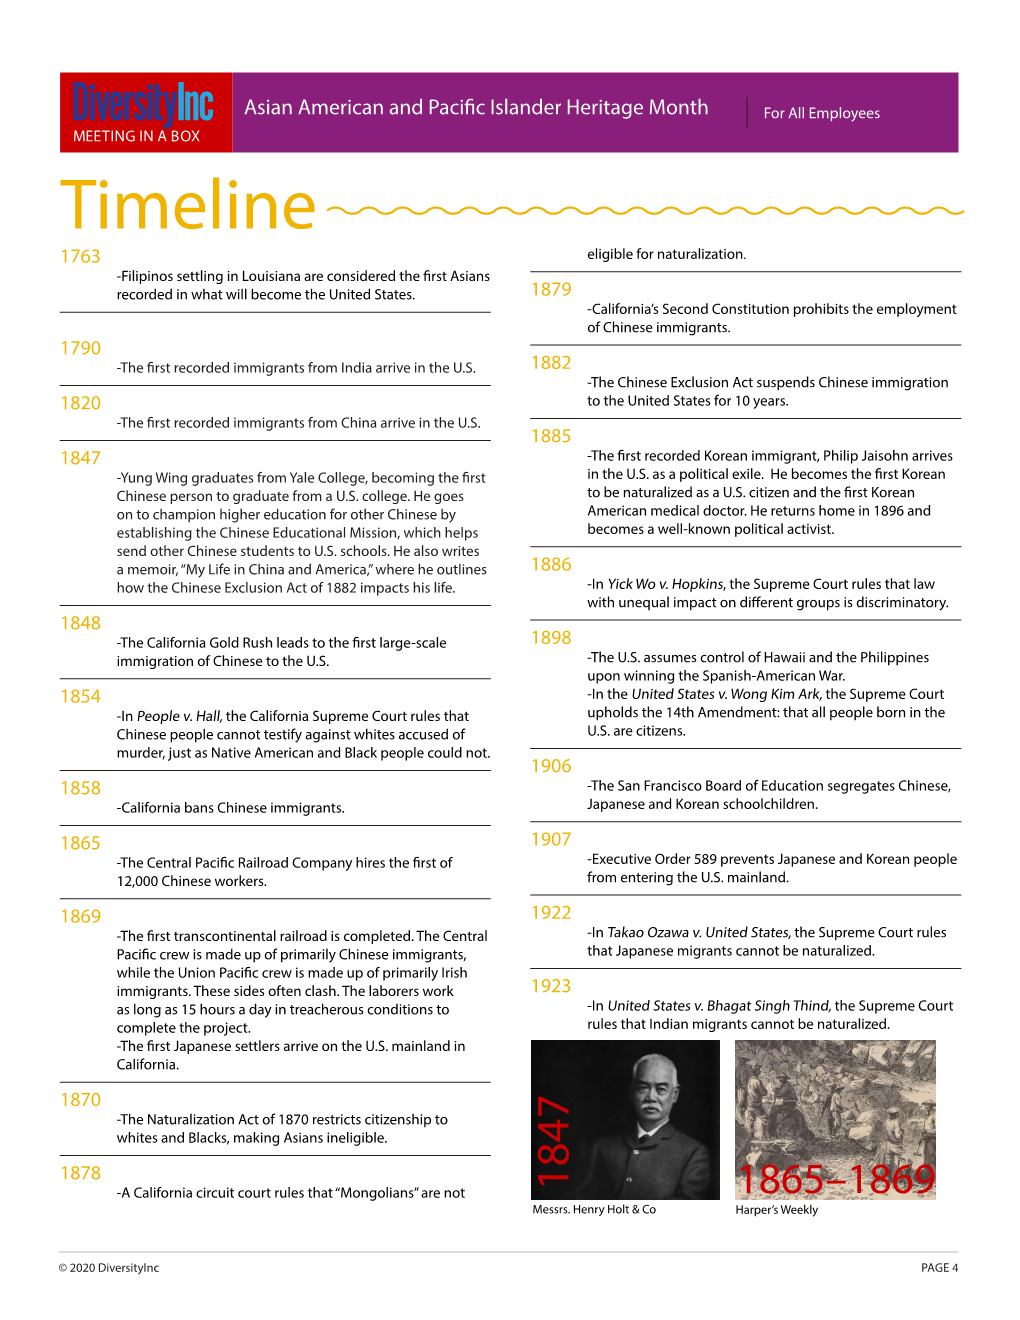 Timeline 1763 Eligible for Naturalization